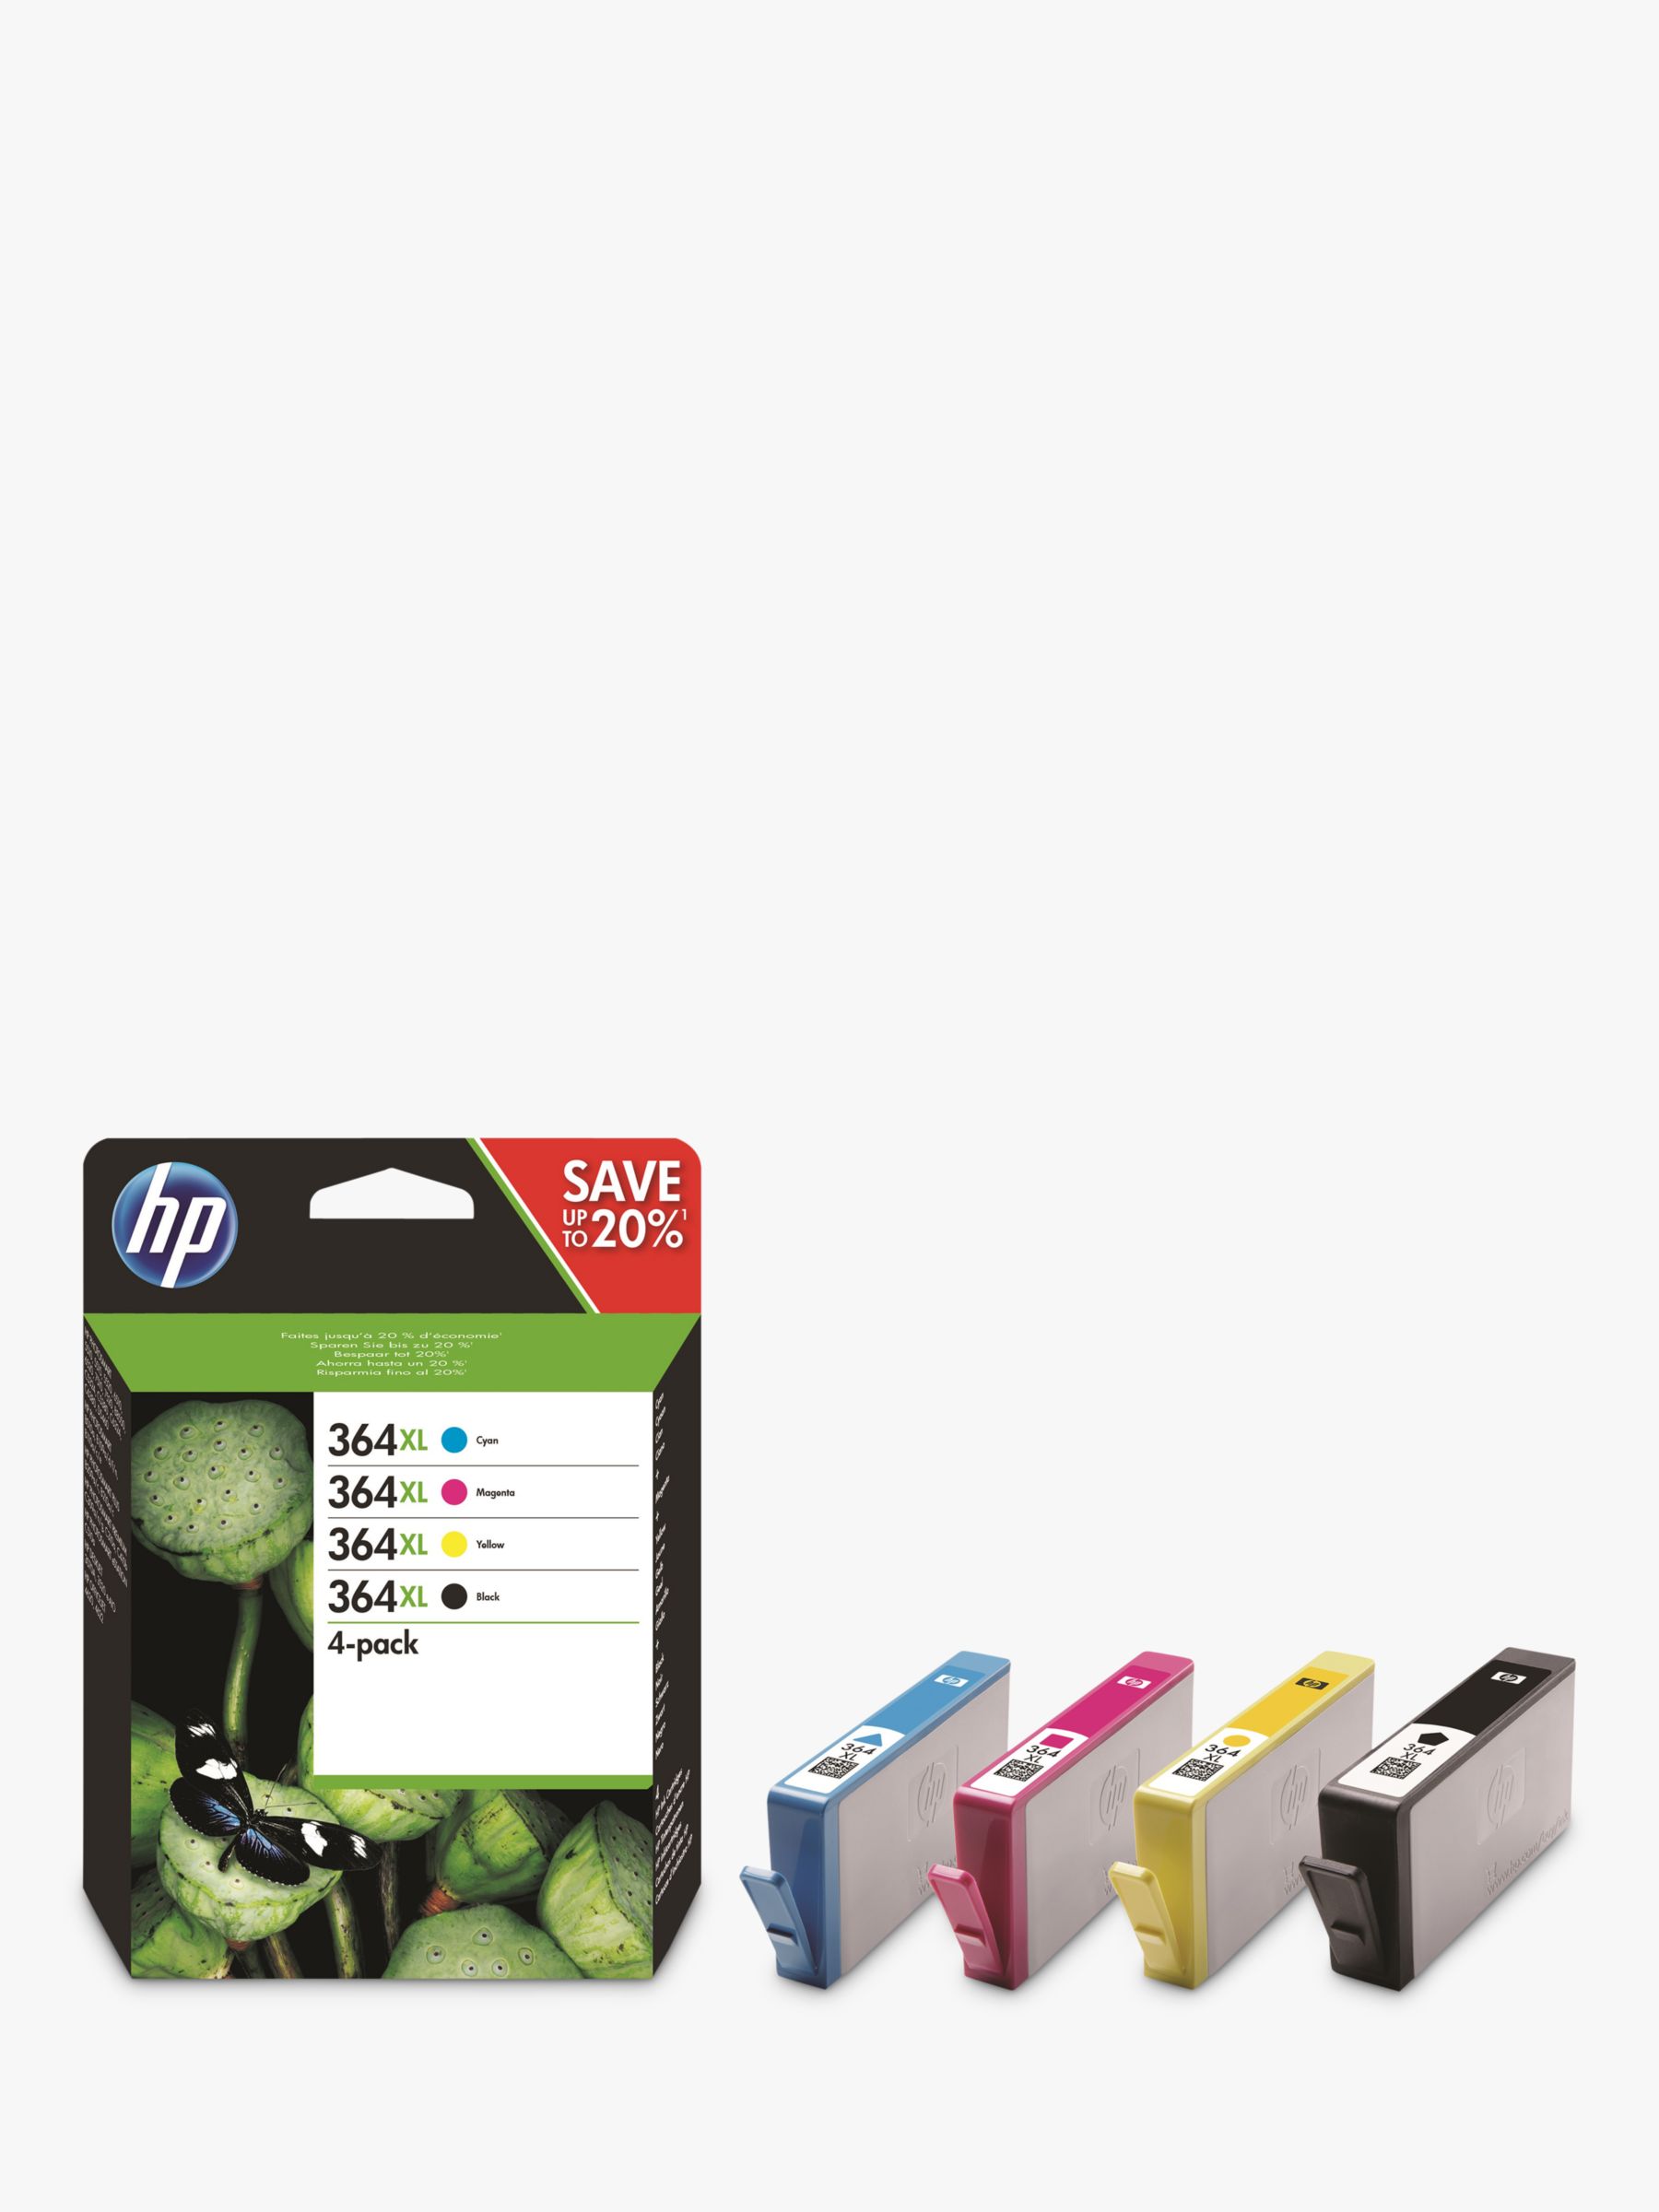 suspensie AIDS Opstand HP 364 XL Ink Cartridge Multipack, Pack Of 4